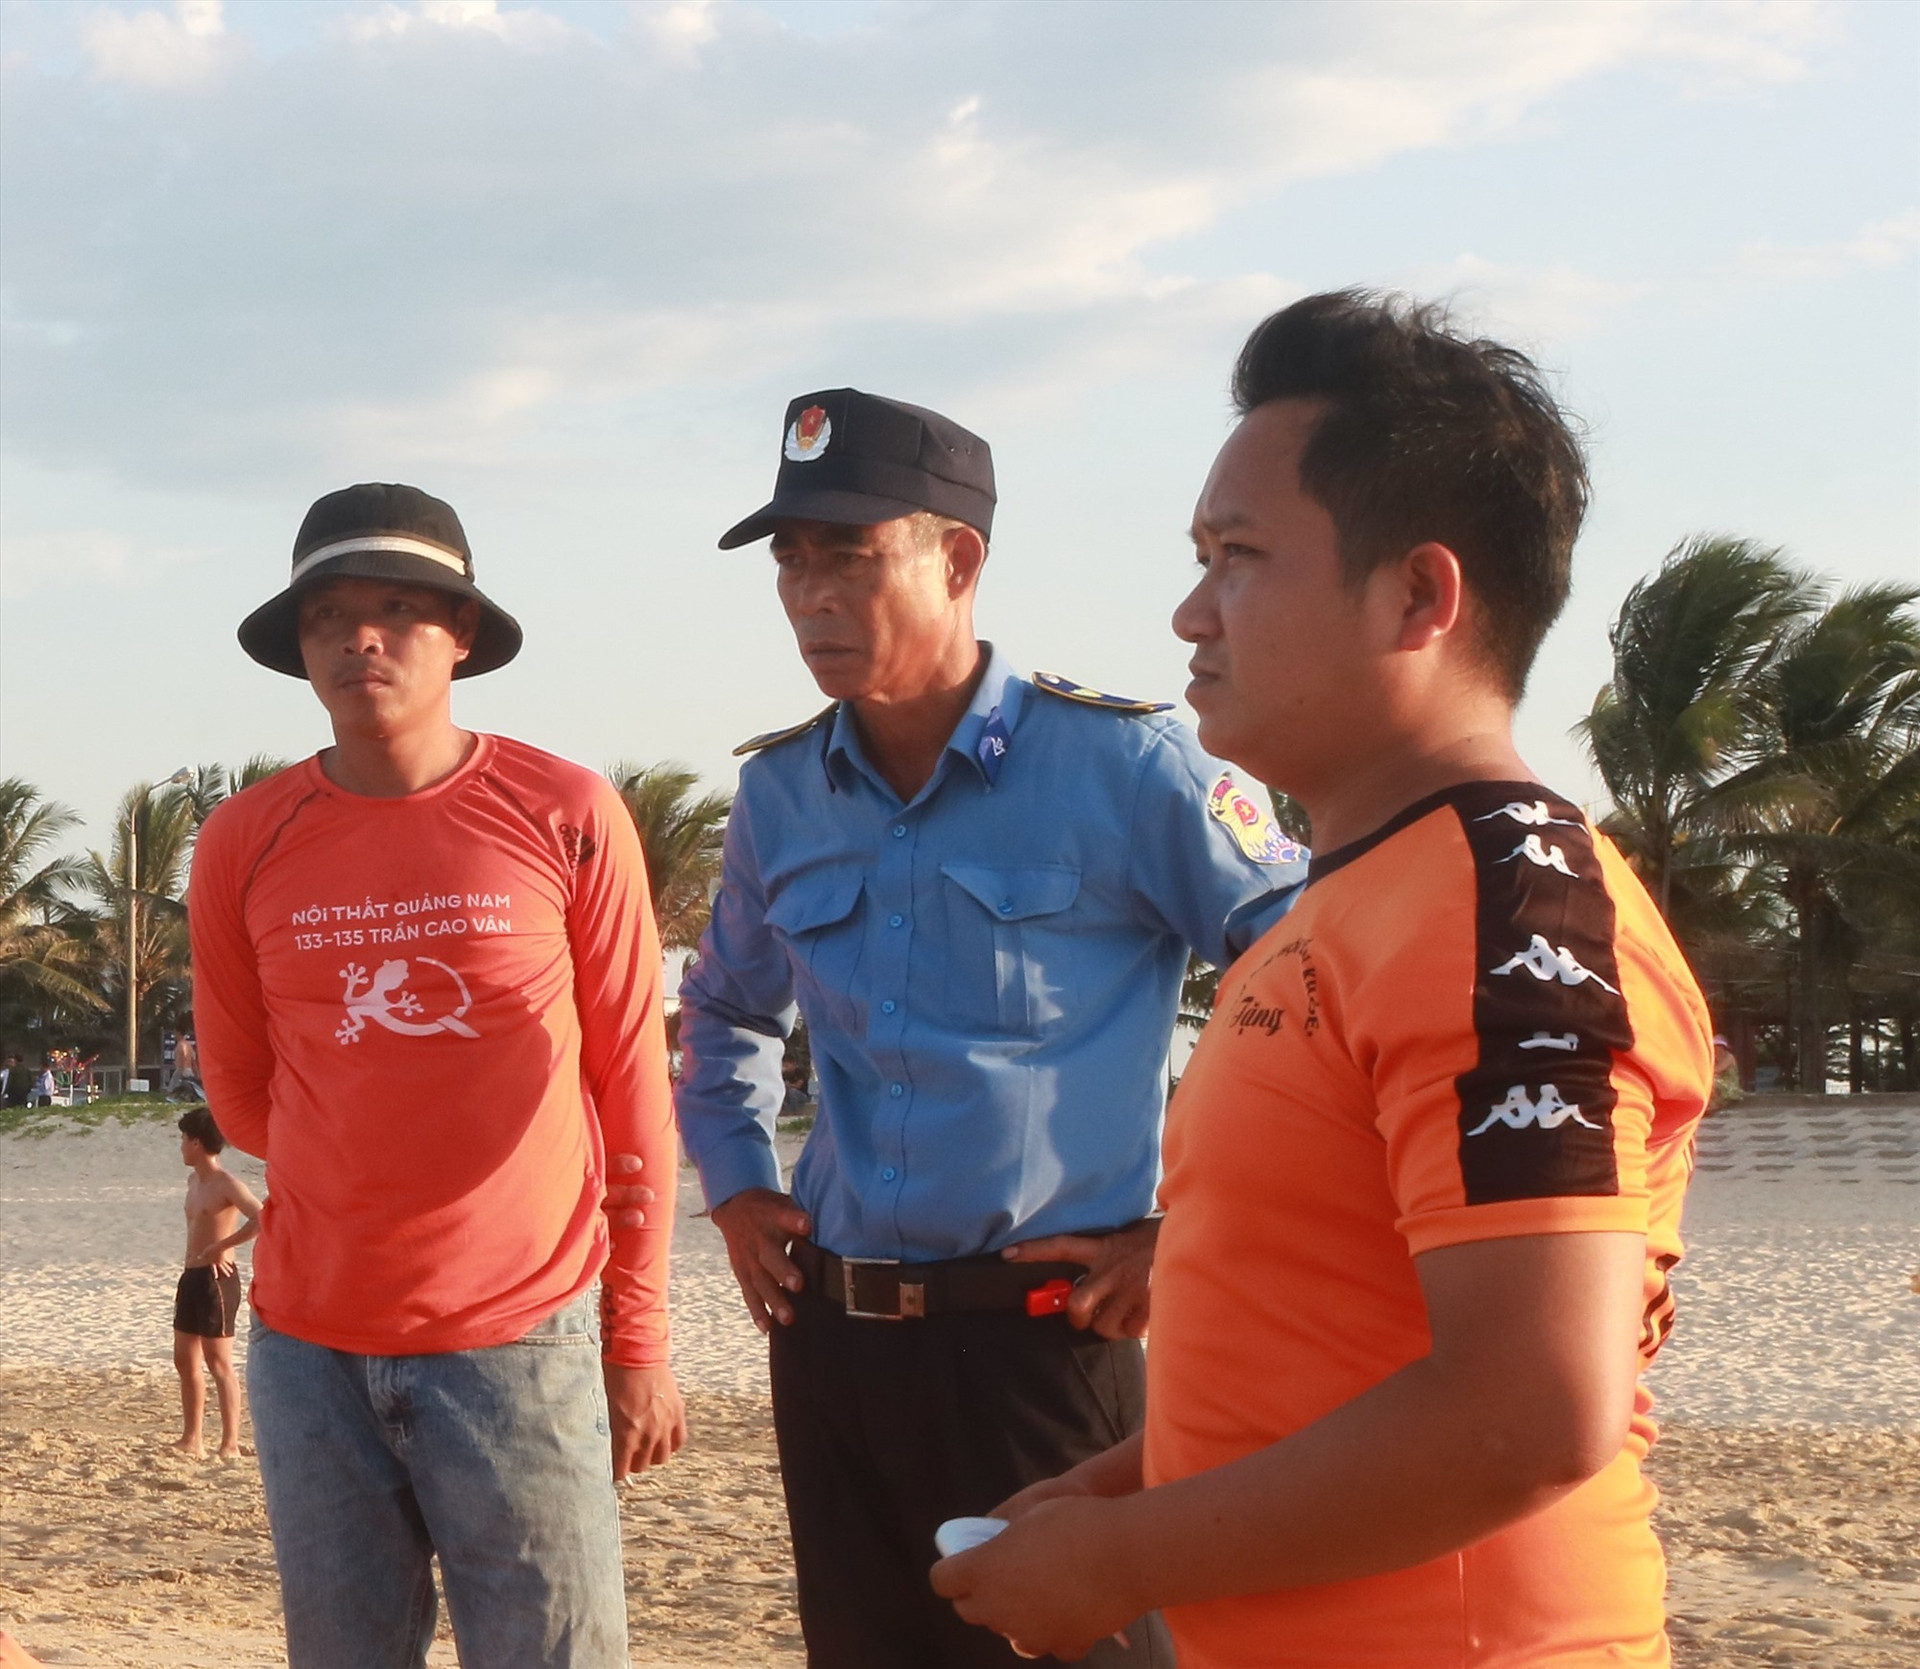 Ông Nguyễn Tấn Nga thường xuyên chỉ đạo các động nghiệp trẻ của mình để hướng dẫn người dân, du khách tắm những điểm an toàn trên biển. Ảnh:TN